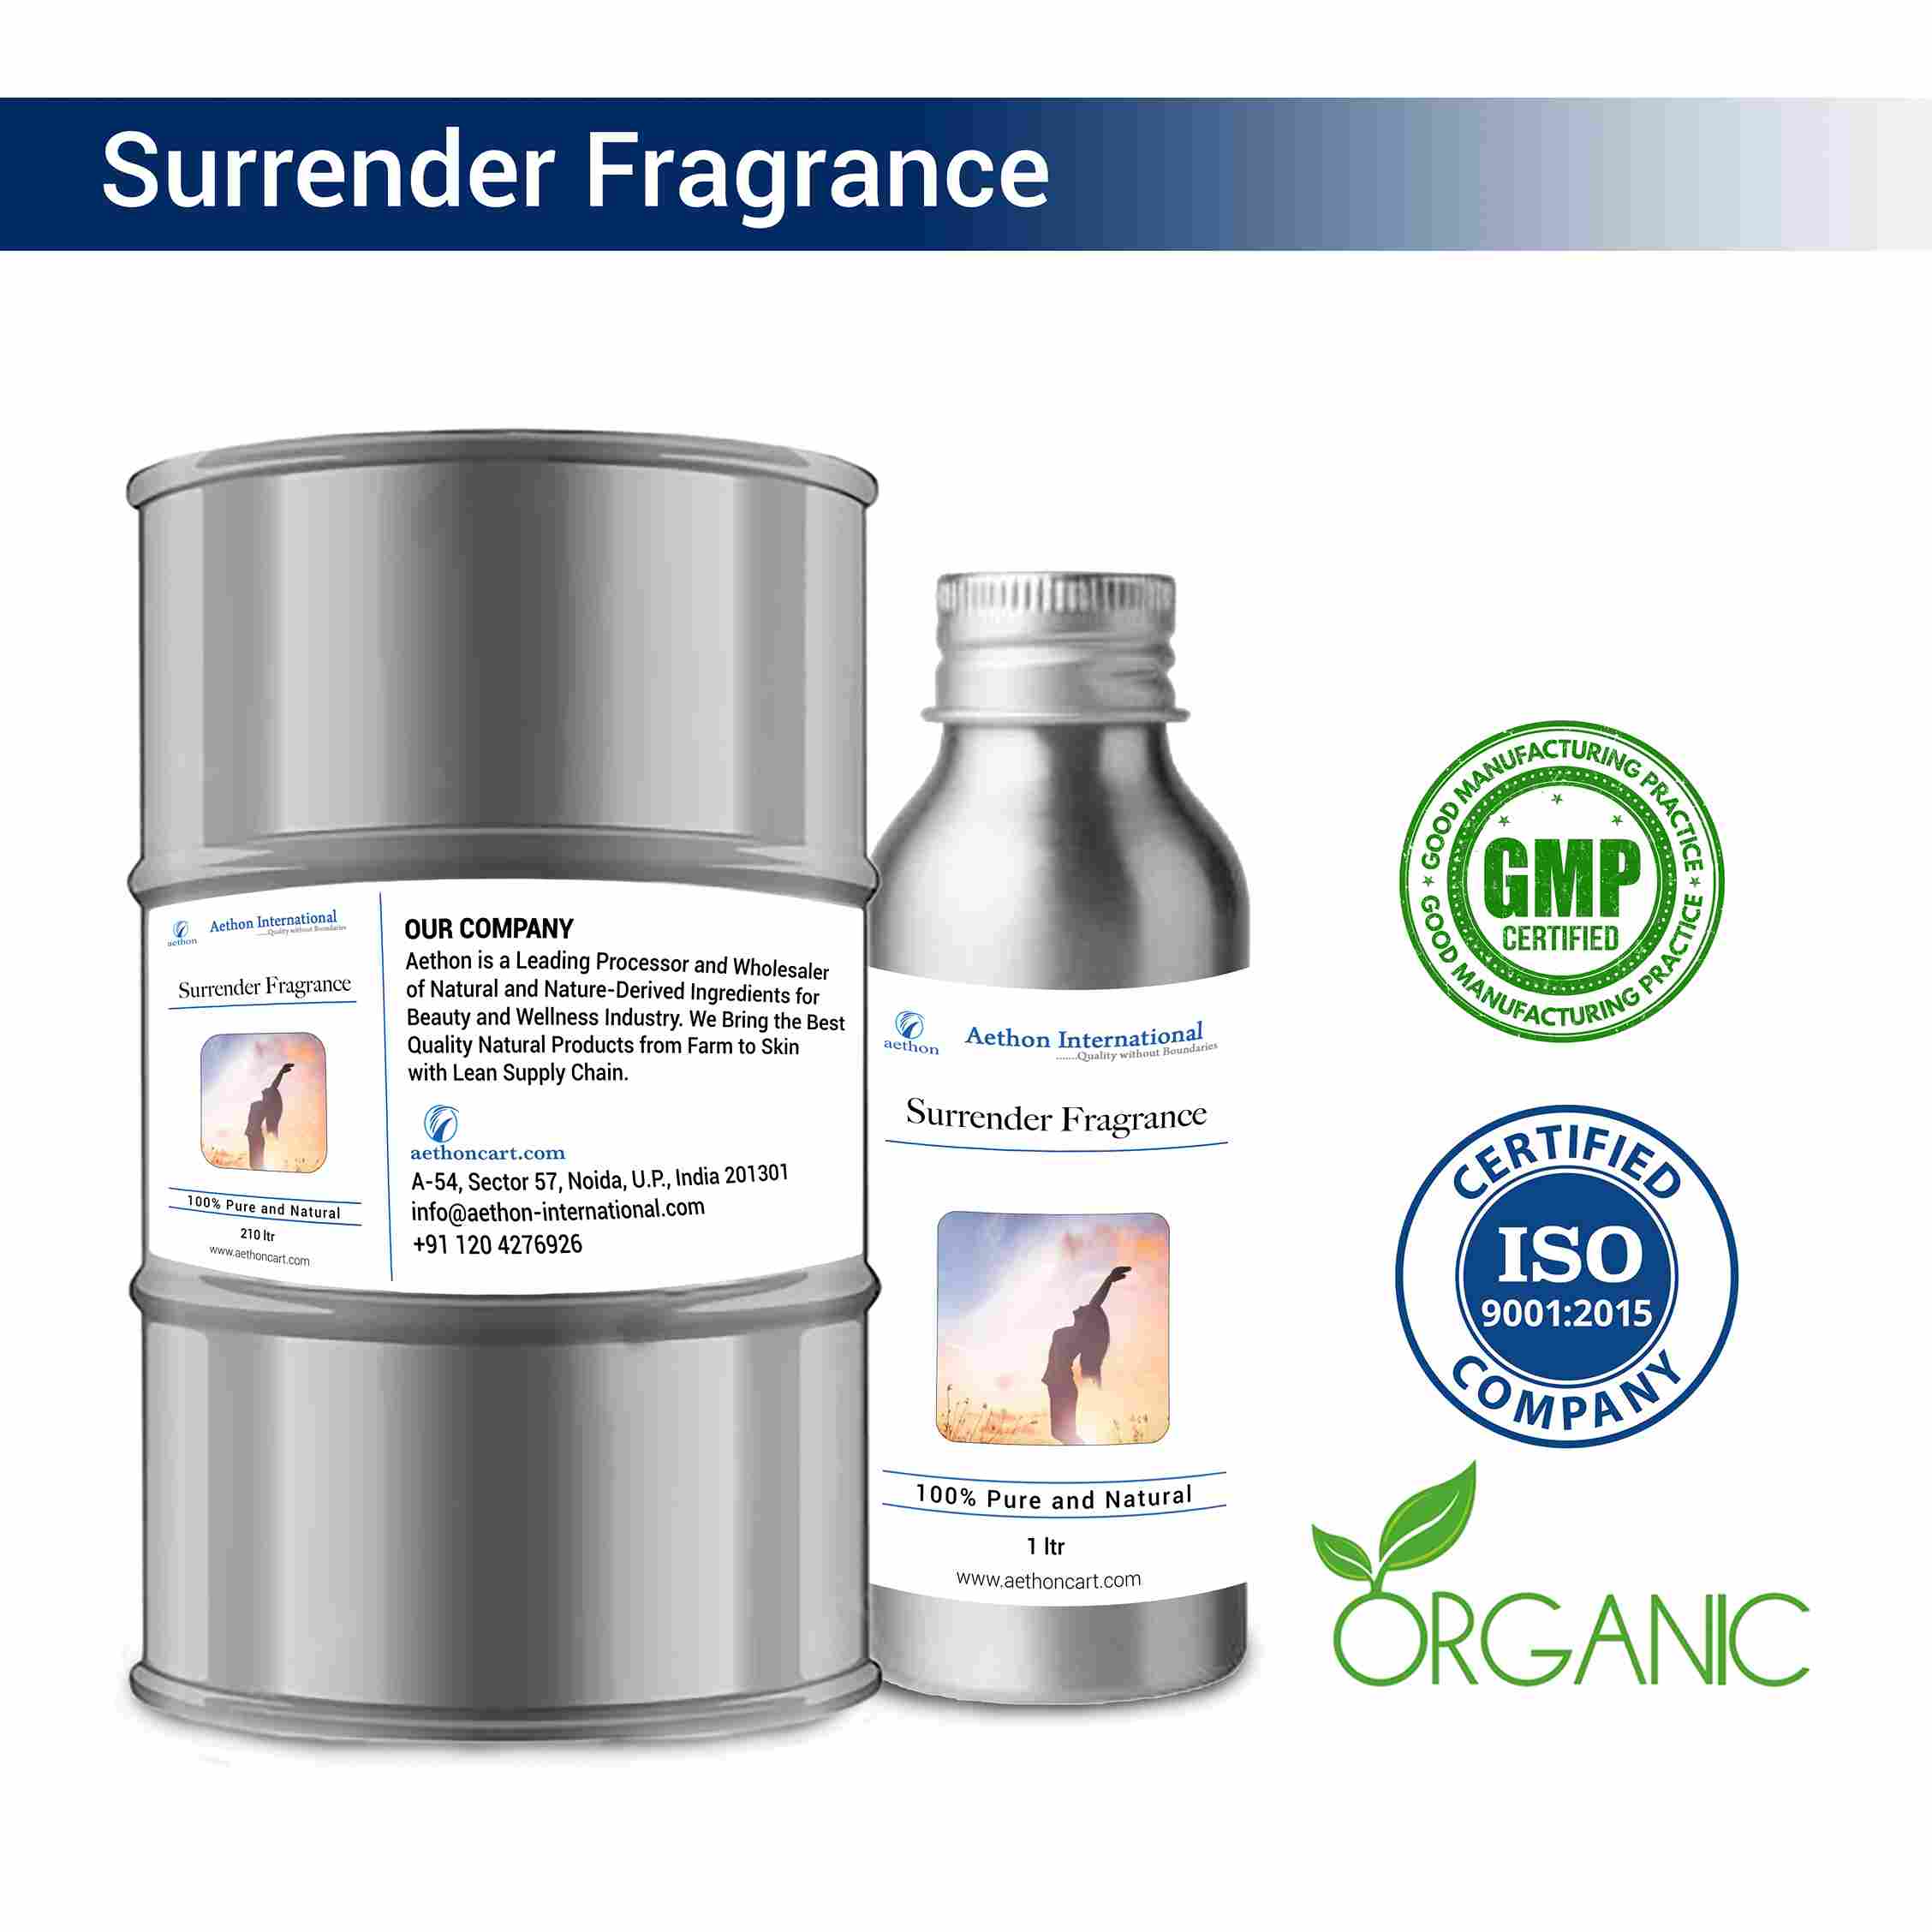 Surrender Fragrance